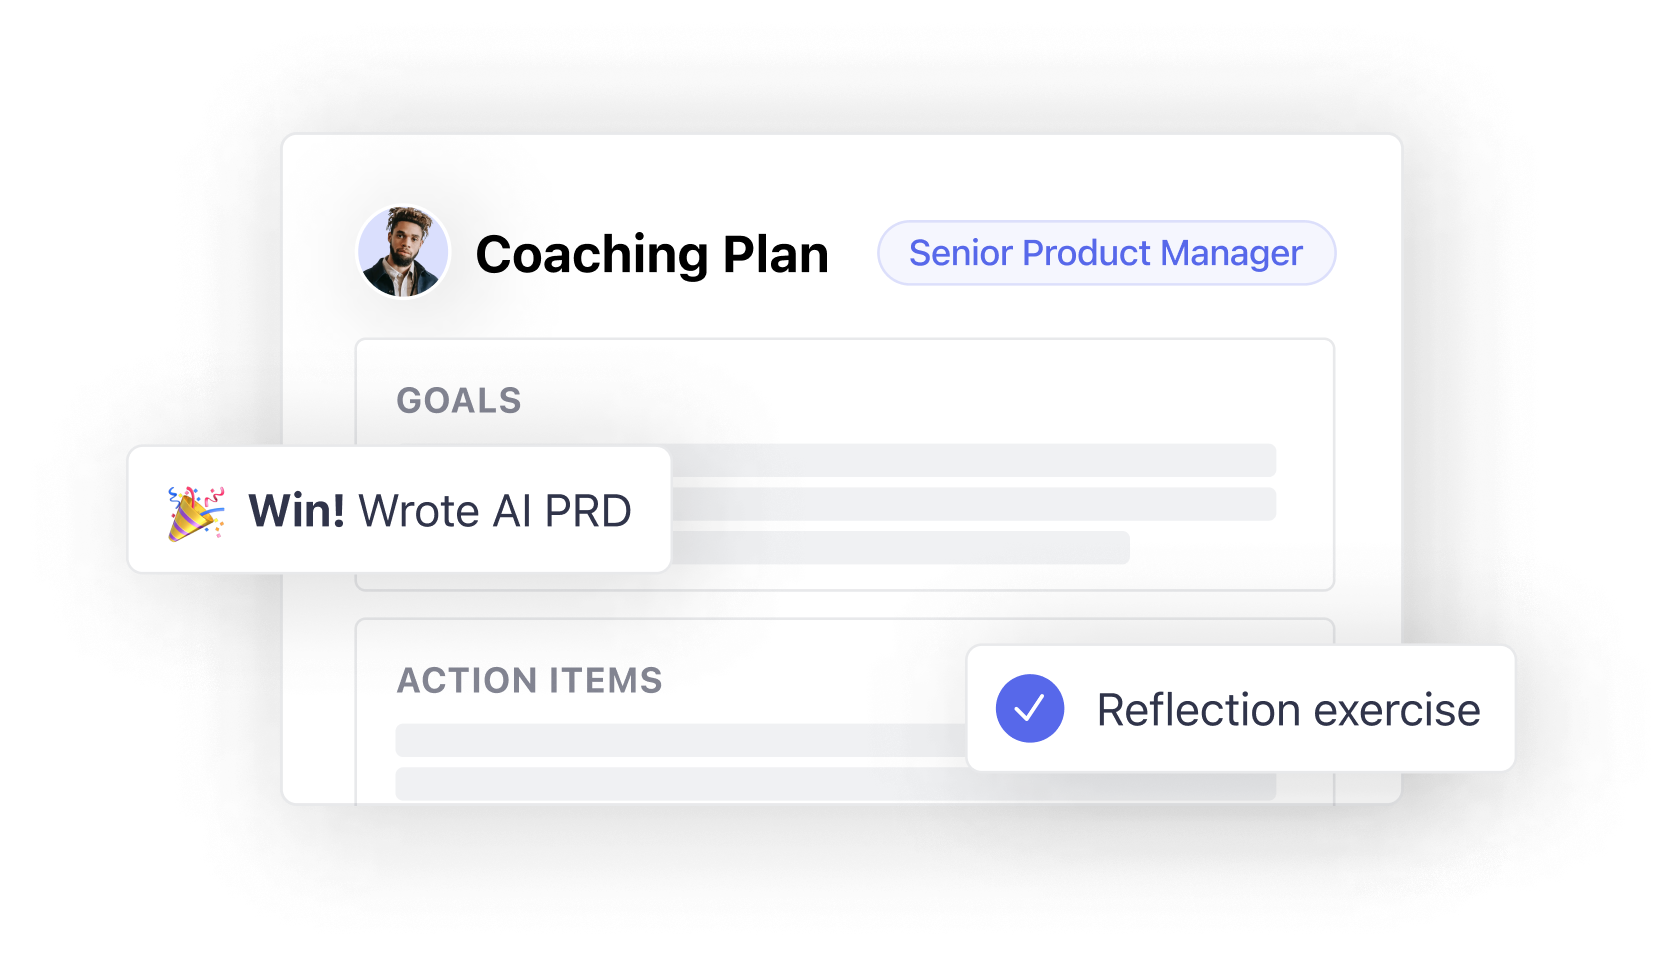 A long-term coaching plan